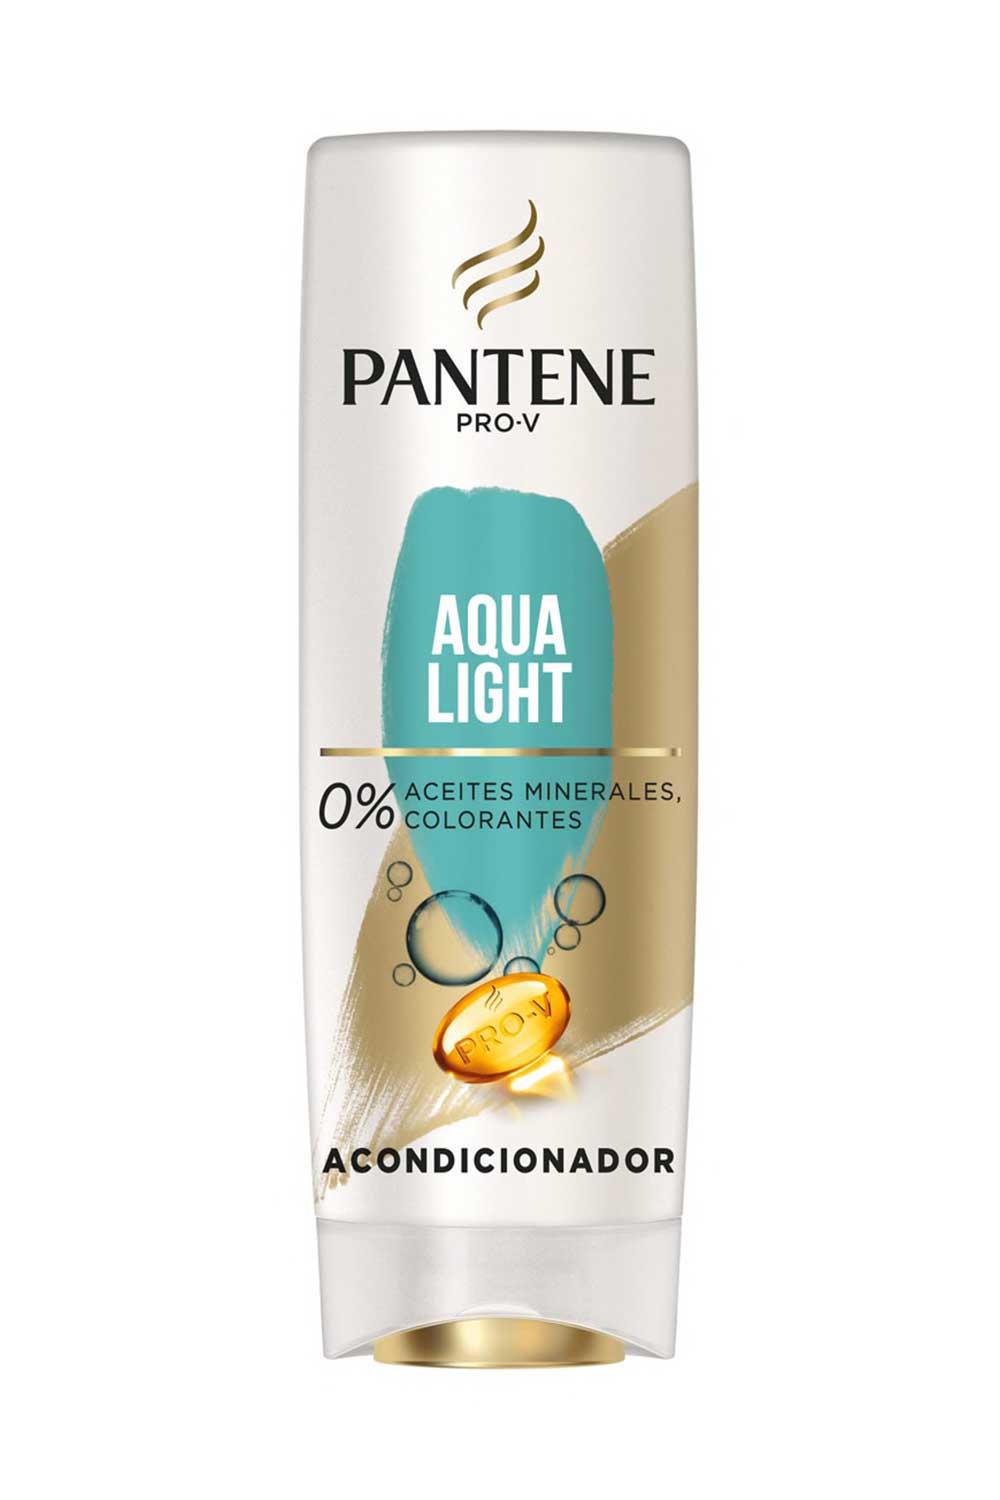 Panteneaqua. Acondicionador pelo graso Aqua Light Pantene Pro-V